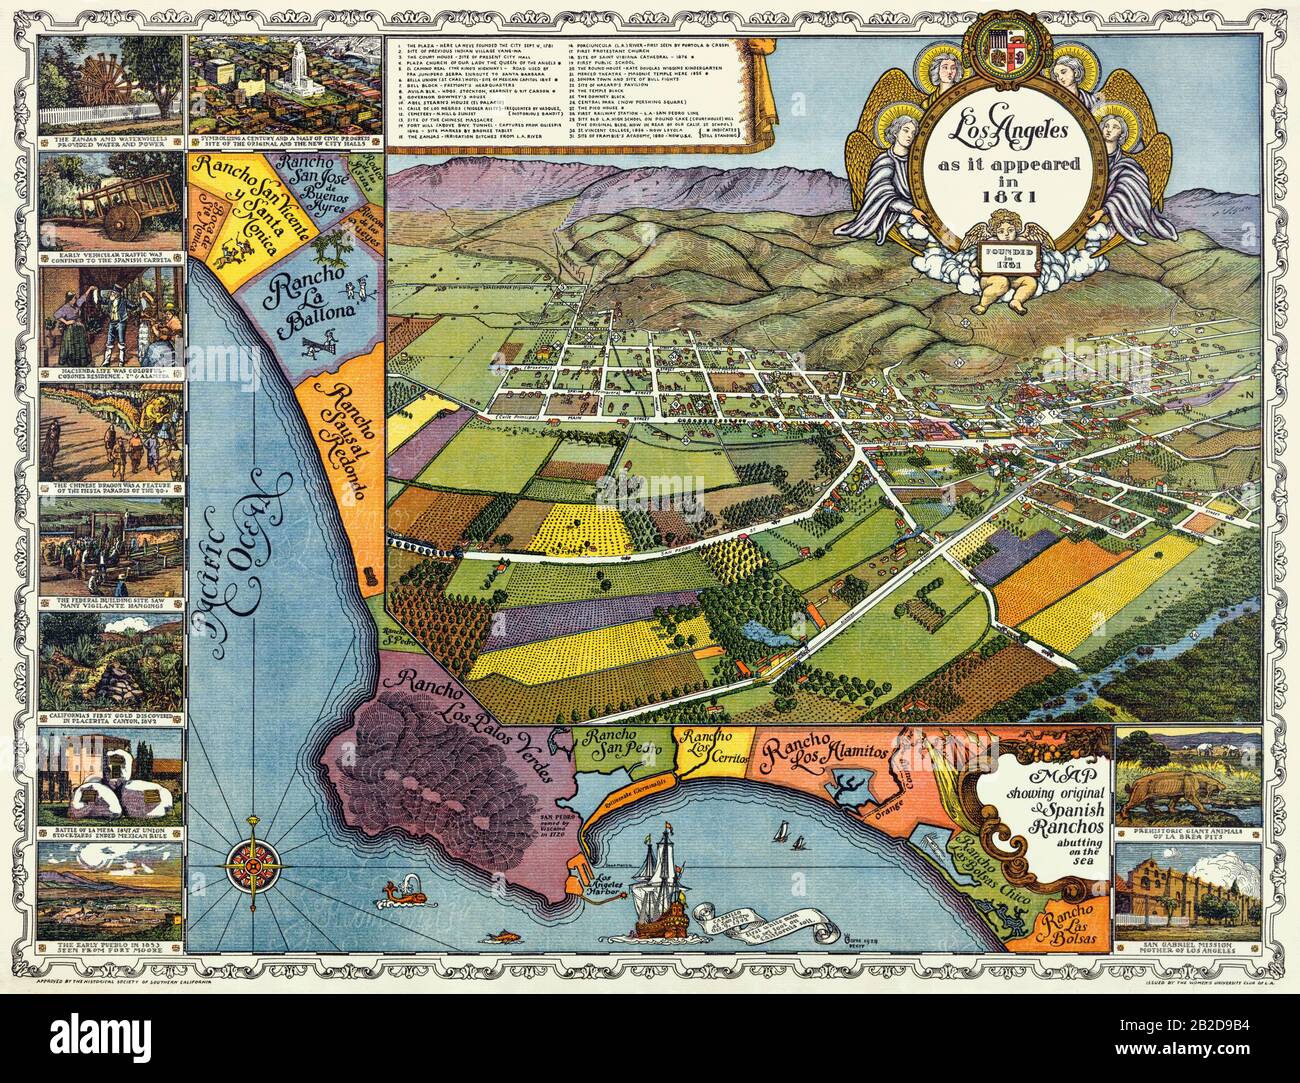 Los Angeles, wie es 1871 erschien, gegründet 1761 Stockfoto